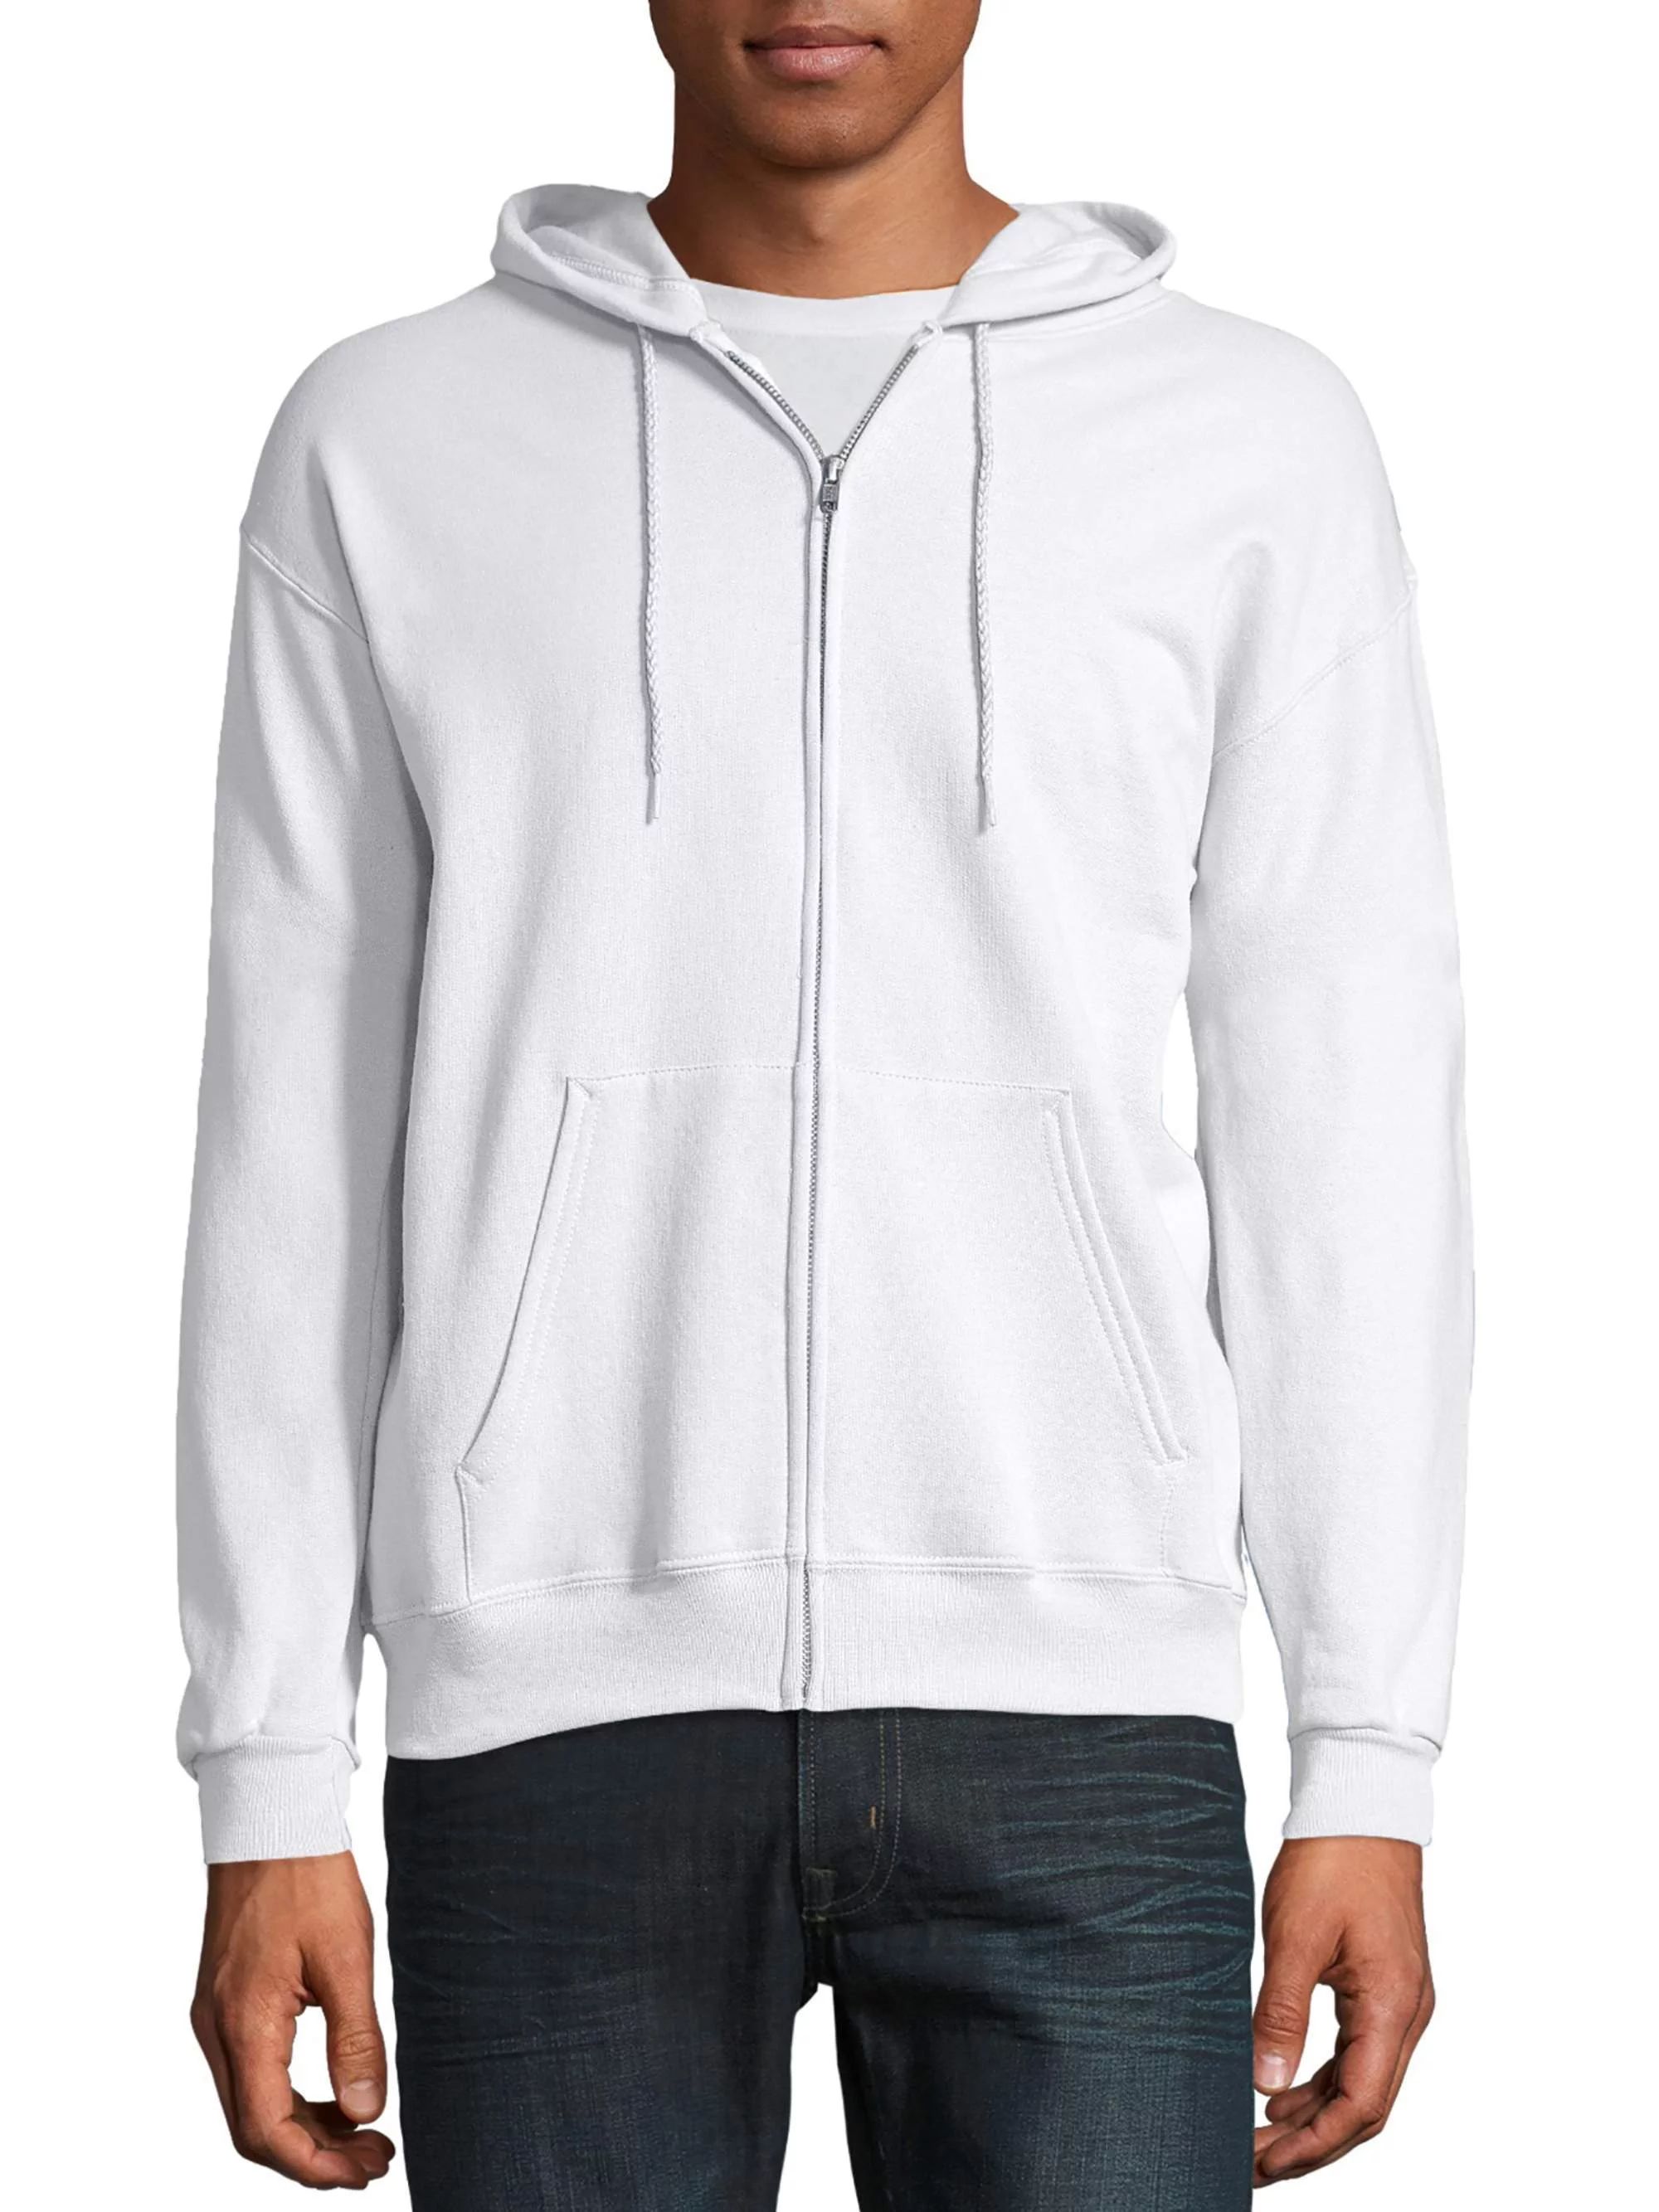 Hanes Men's and Big Men's Ecosmart Fleece Full Zip Hooded Jacket, up to Size 3XL | Walmart (US)